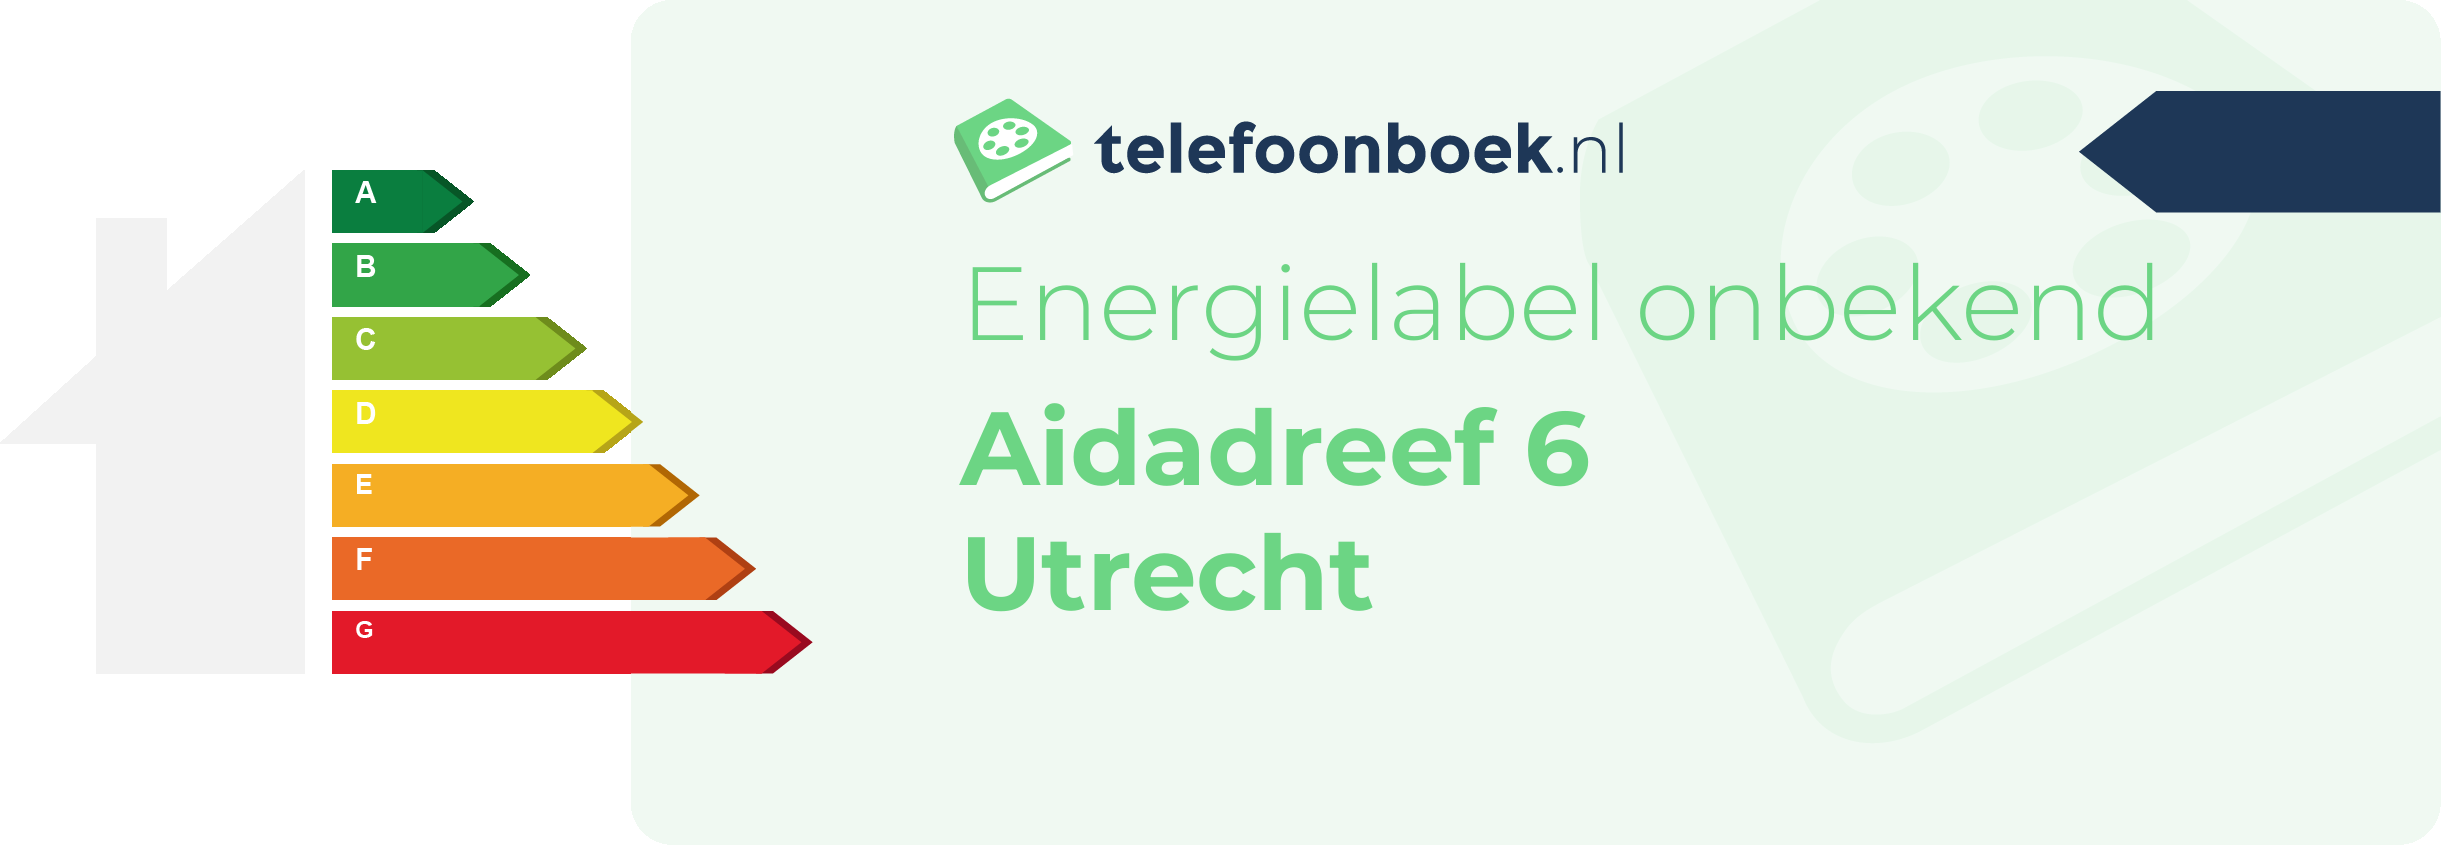 Energielabel Aidadreef 6 Utrecht